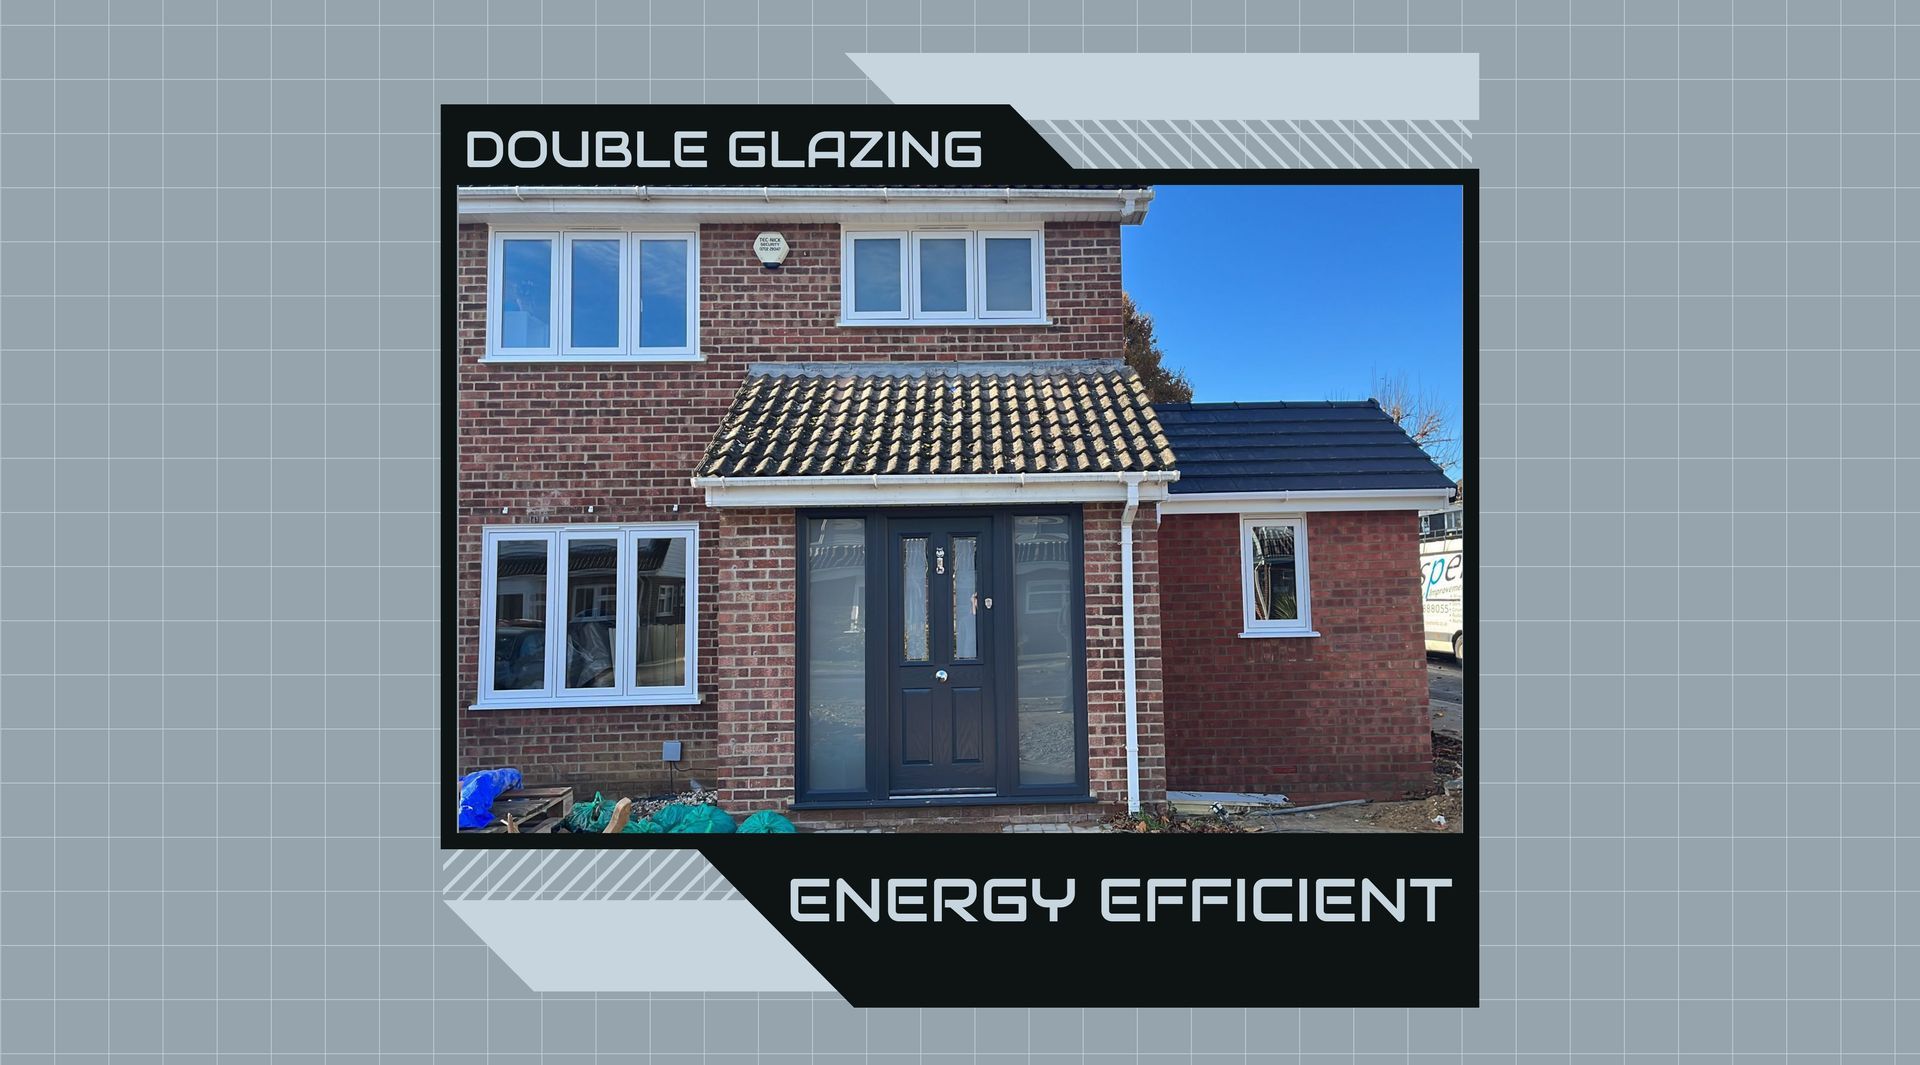 Double Glazing - Your Energy-Efficient Window and Door Specialists